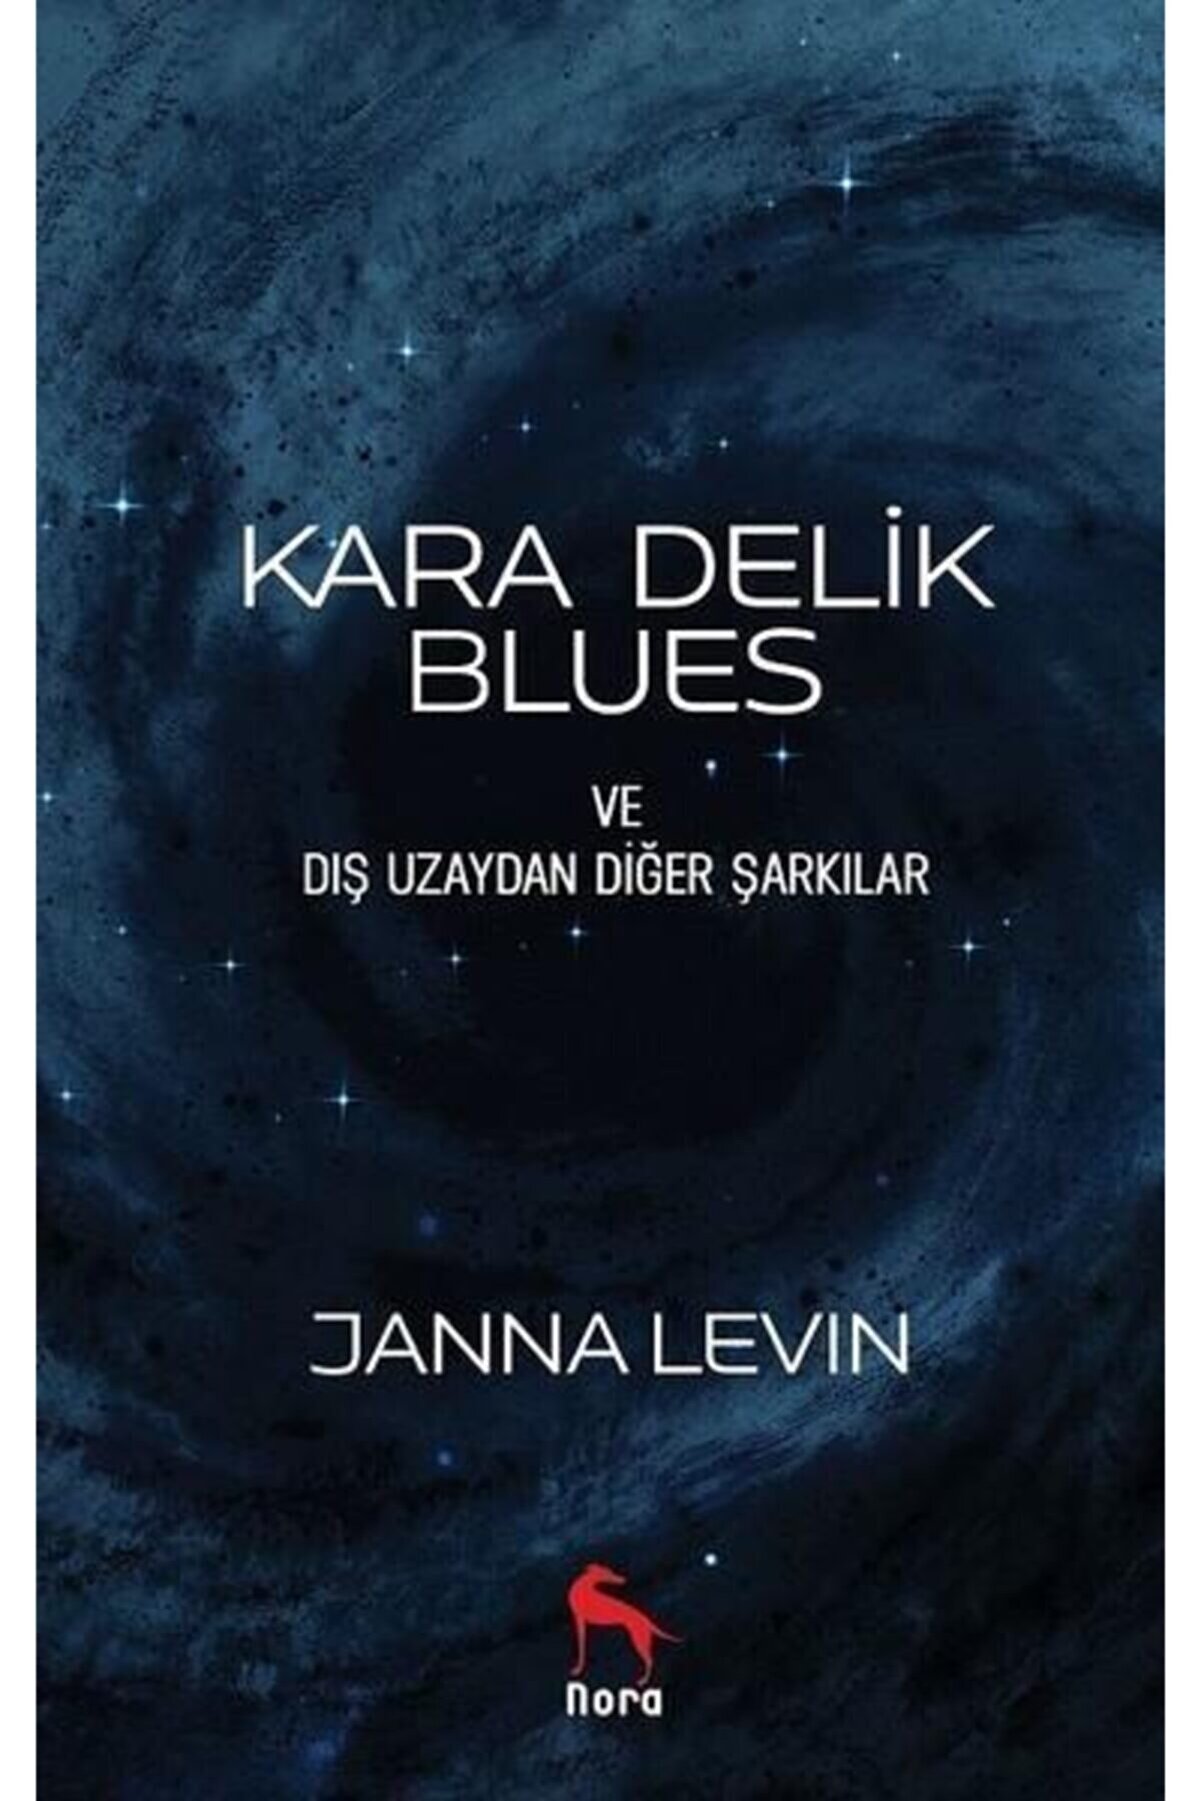 Nora Kitap Bsrl K11 Kara Delik Blues Ve Dış Uzaydan Diğer Şarkılar